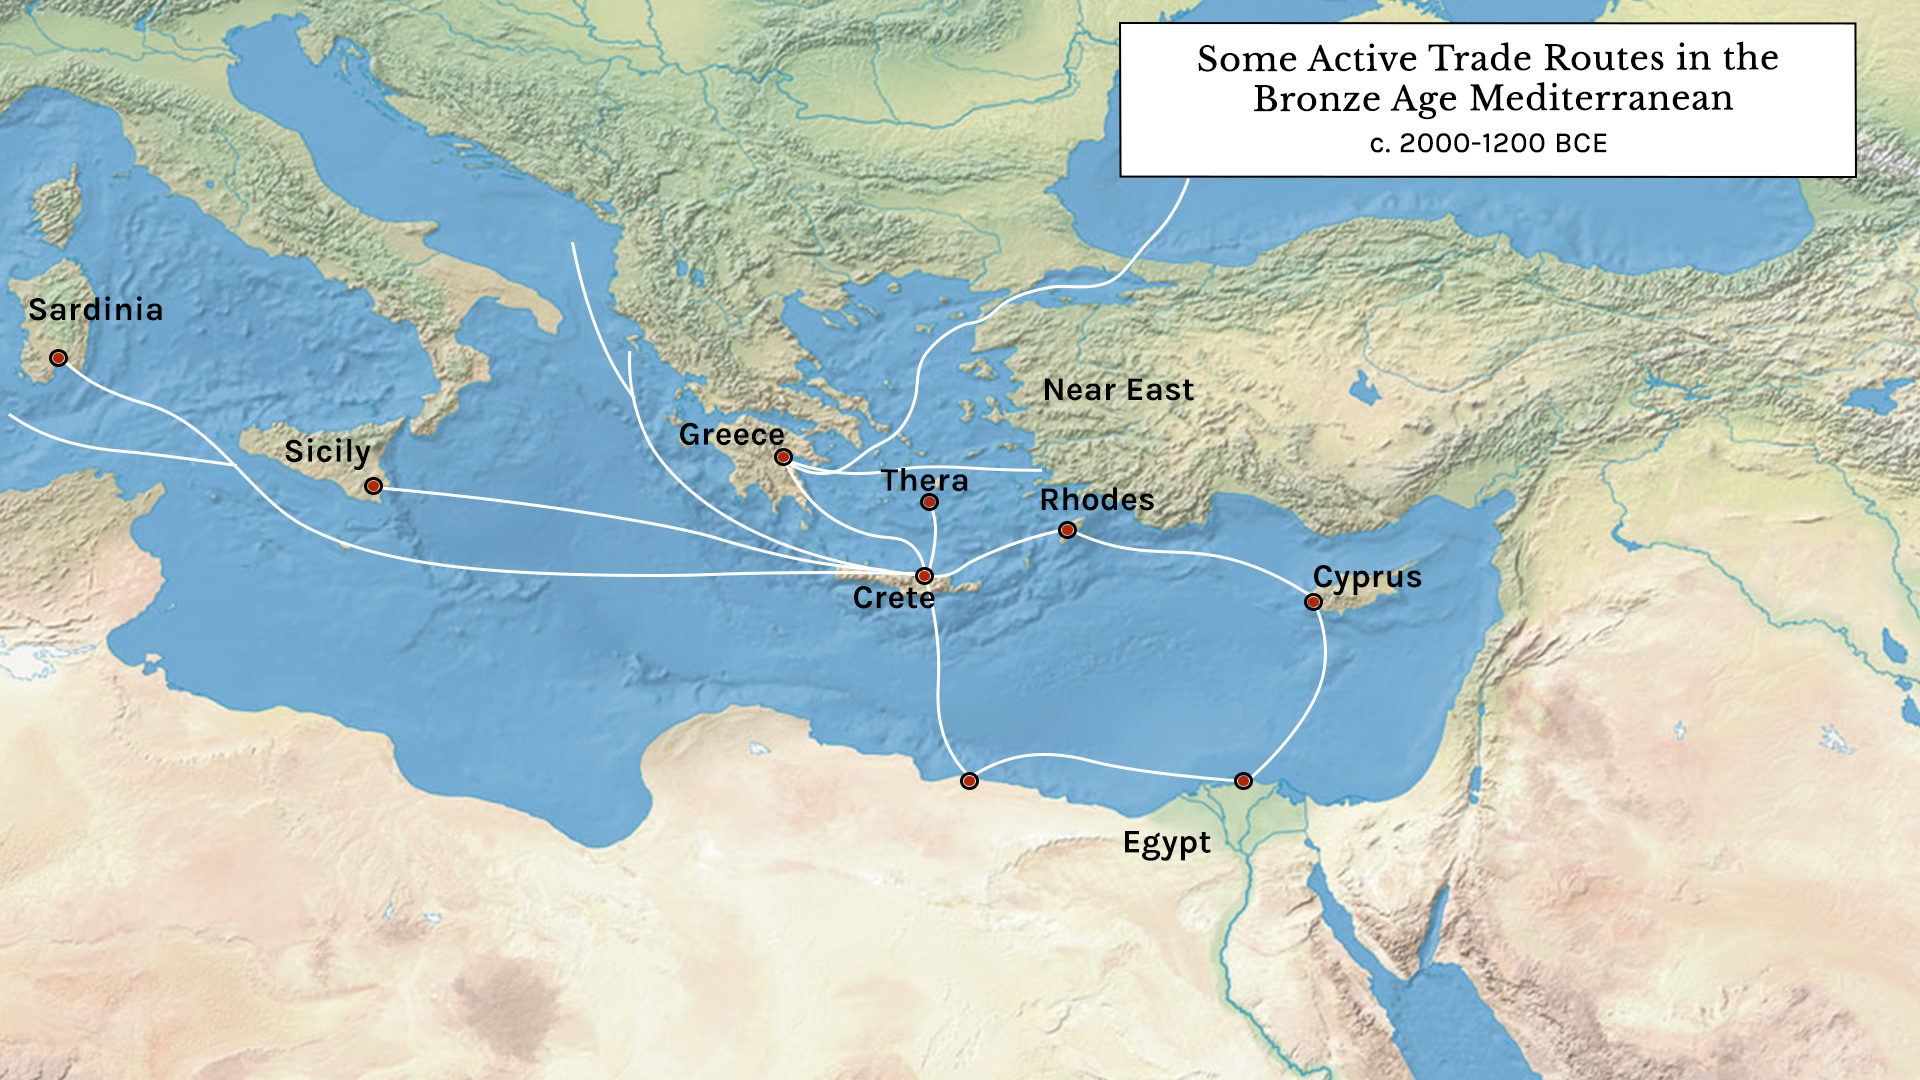 mediterranean sea trade map